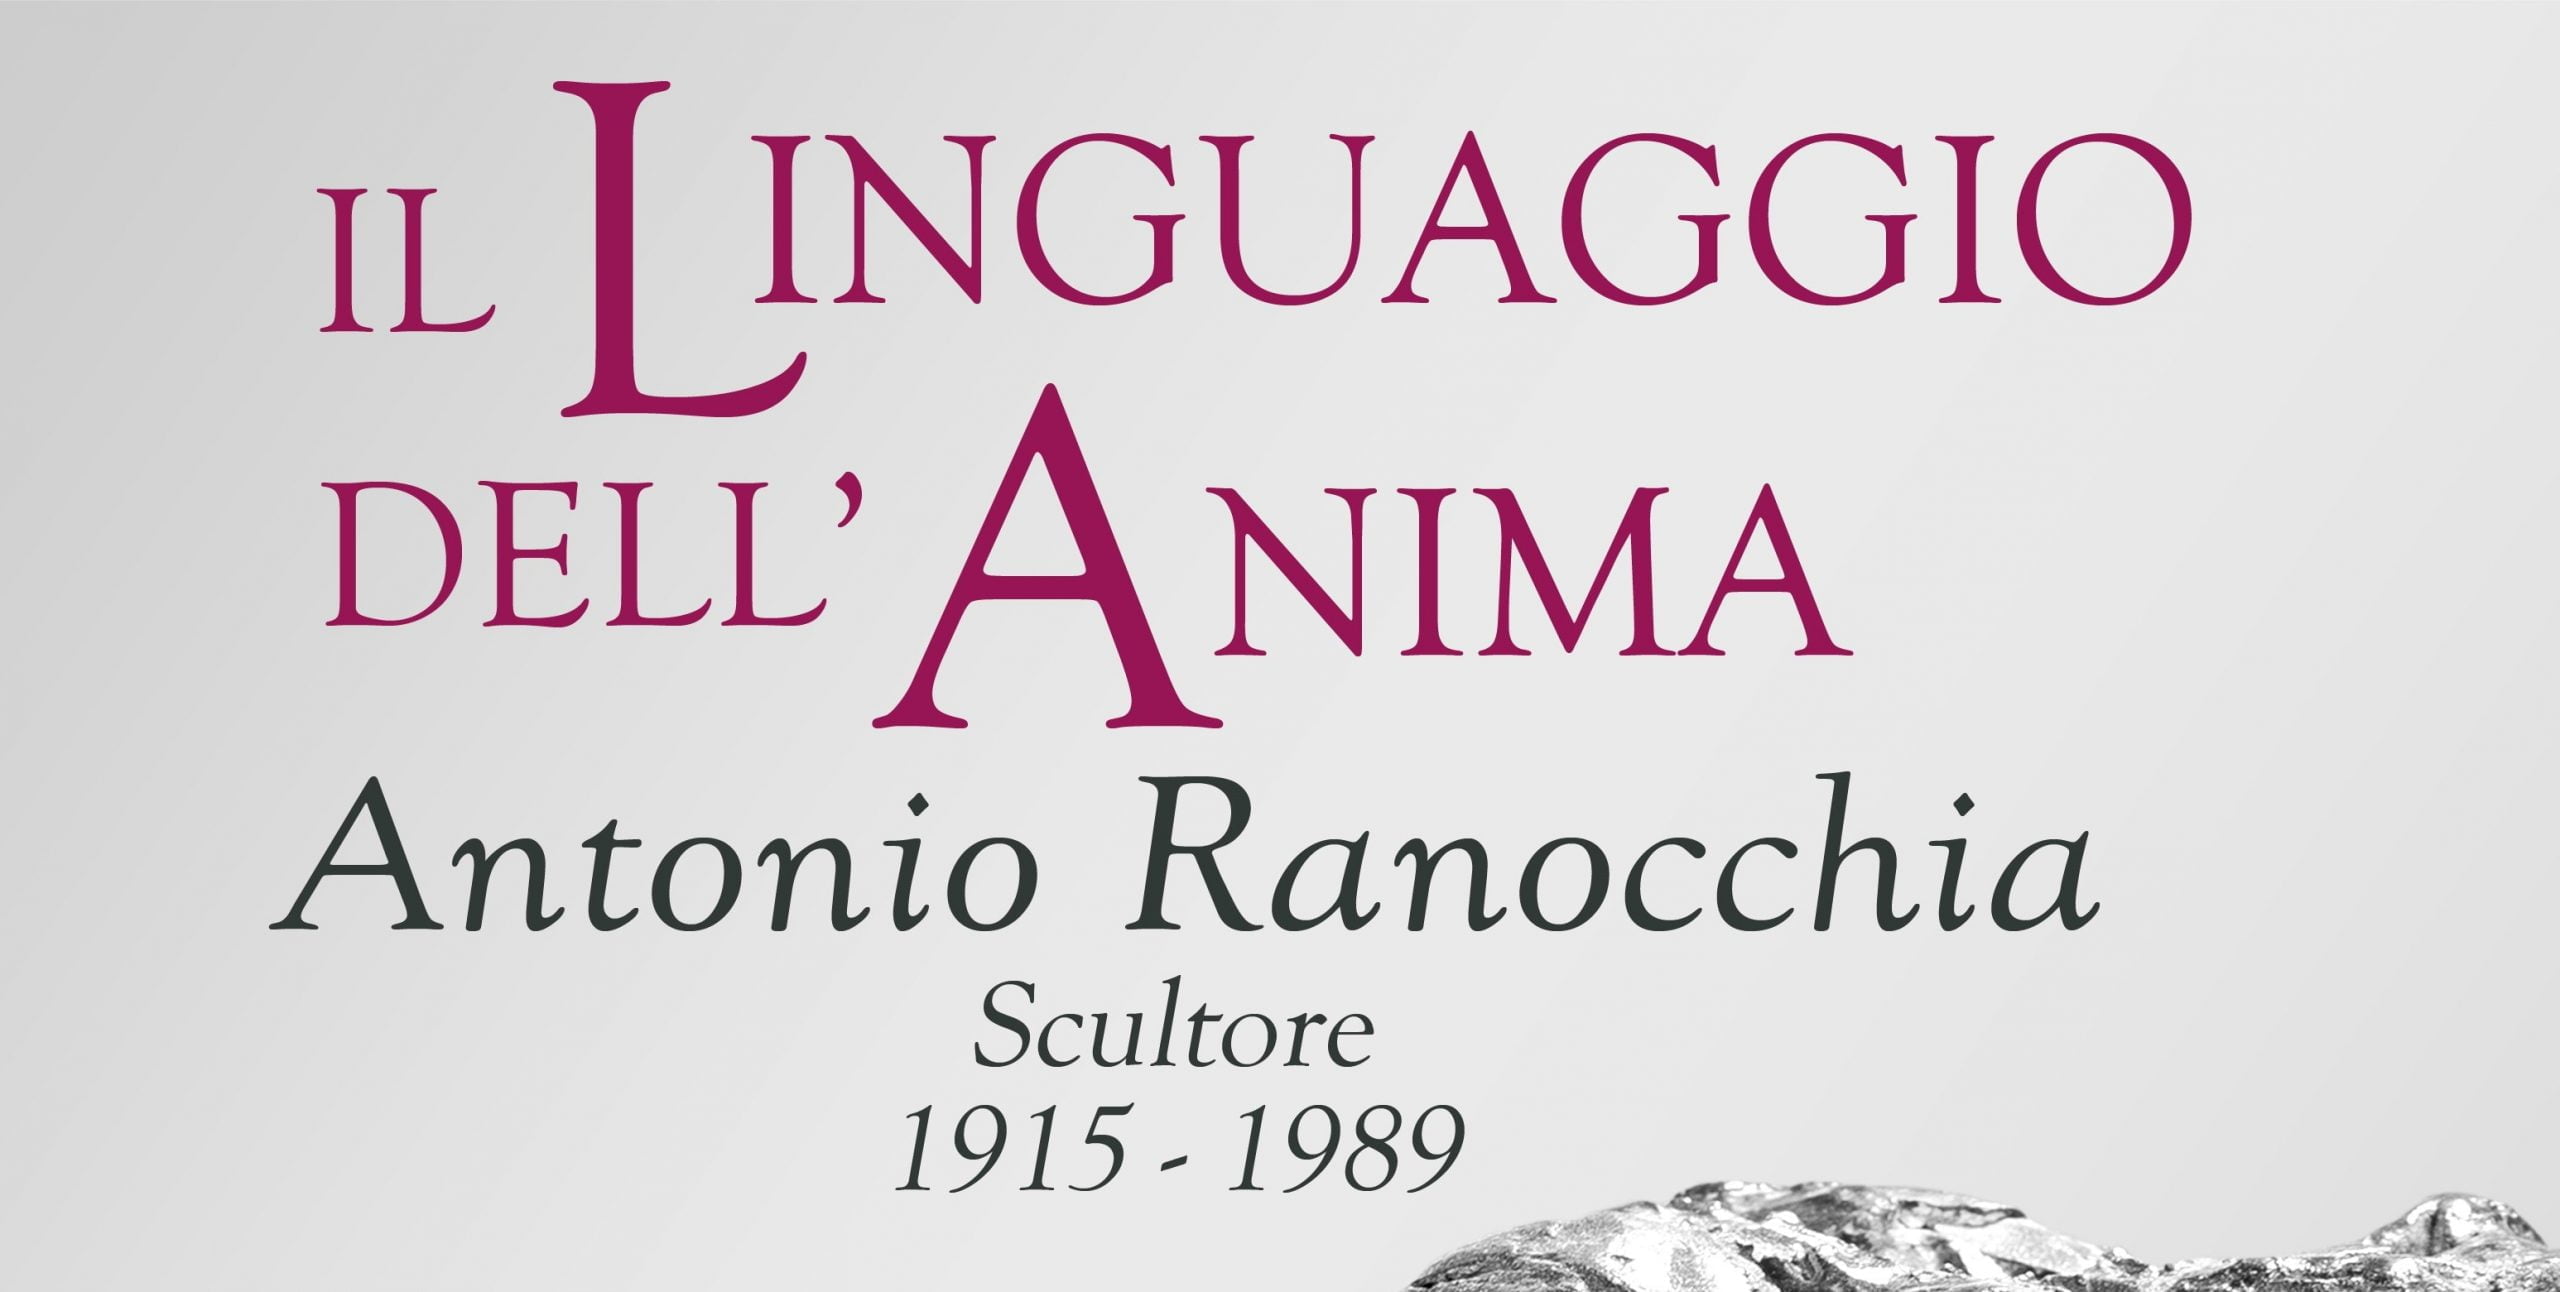 Il linguaggio dell’anima: una mostra dedicata allo scultore Antonio Ranocchia